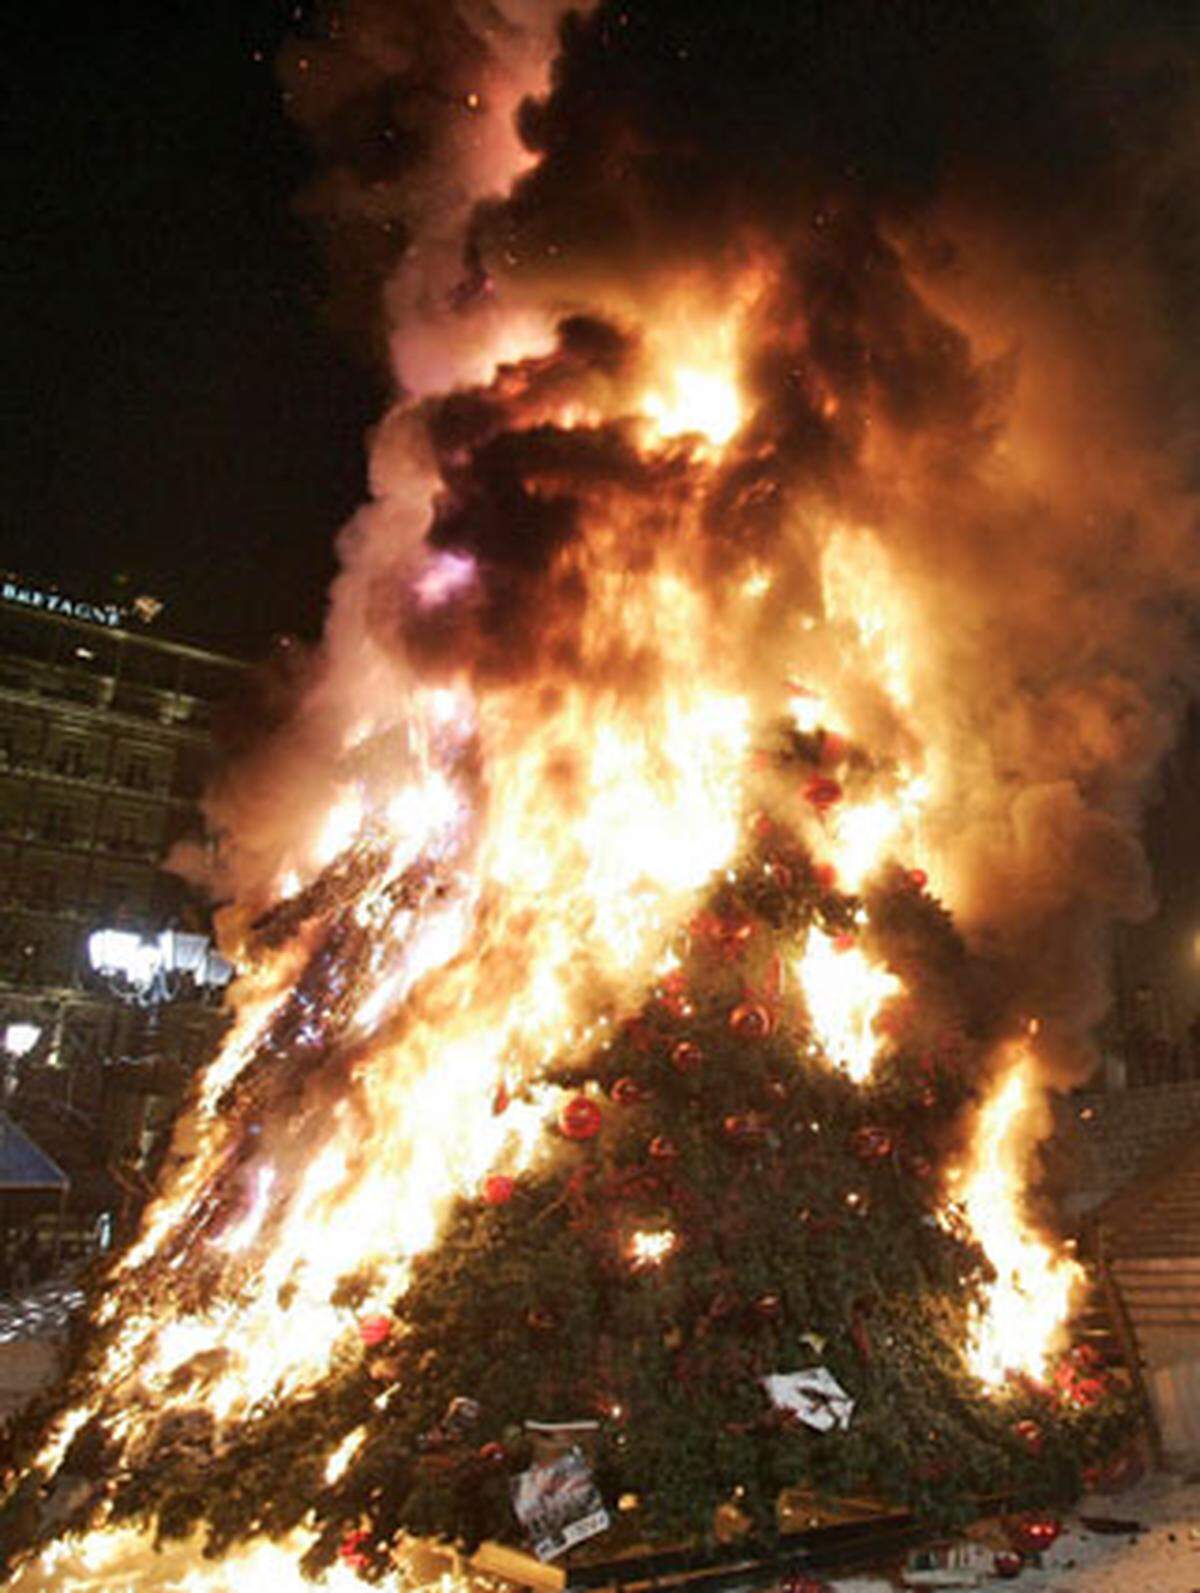 Indes wird weiter randaliert. "Oh Tannenbaum" auf Griechisch sangen die Demonstranten am Montagabend, als sie den großen Christbaum der Stadt Athen in Brand steckten.